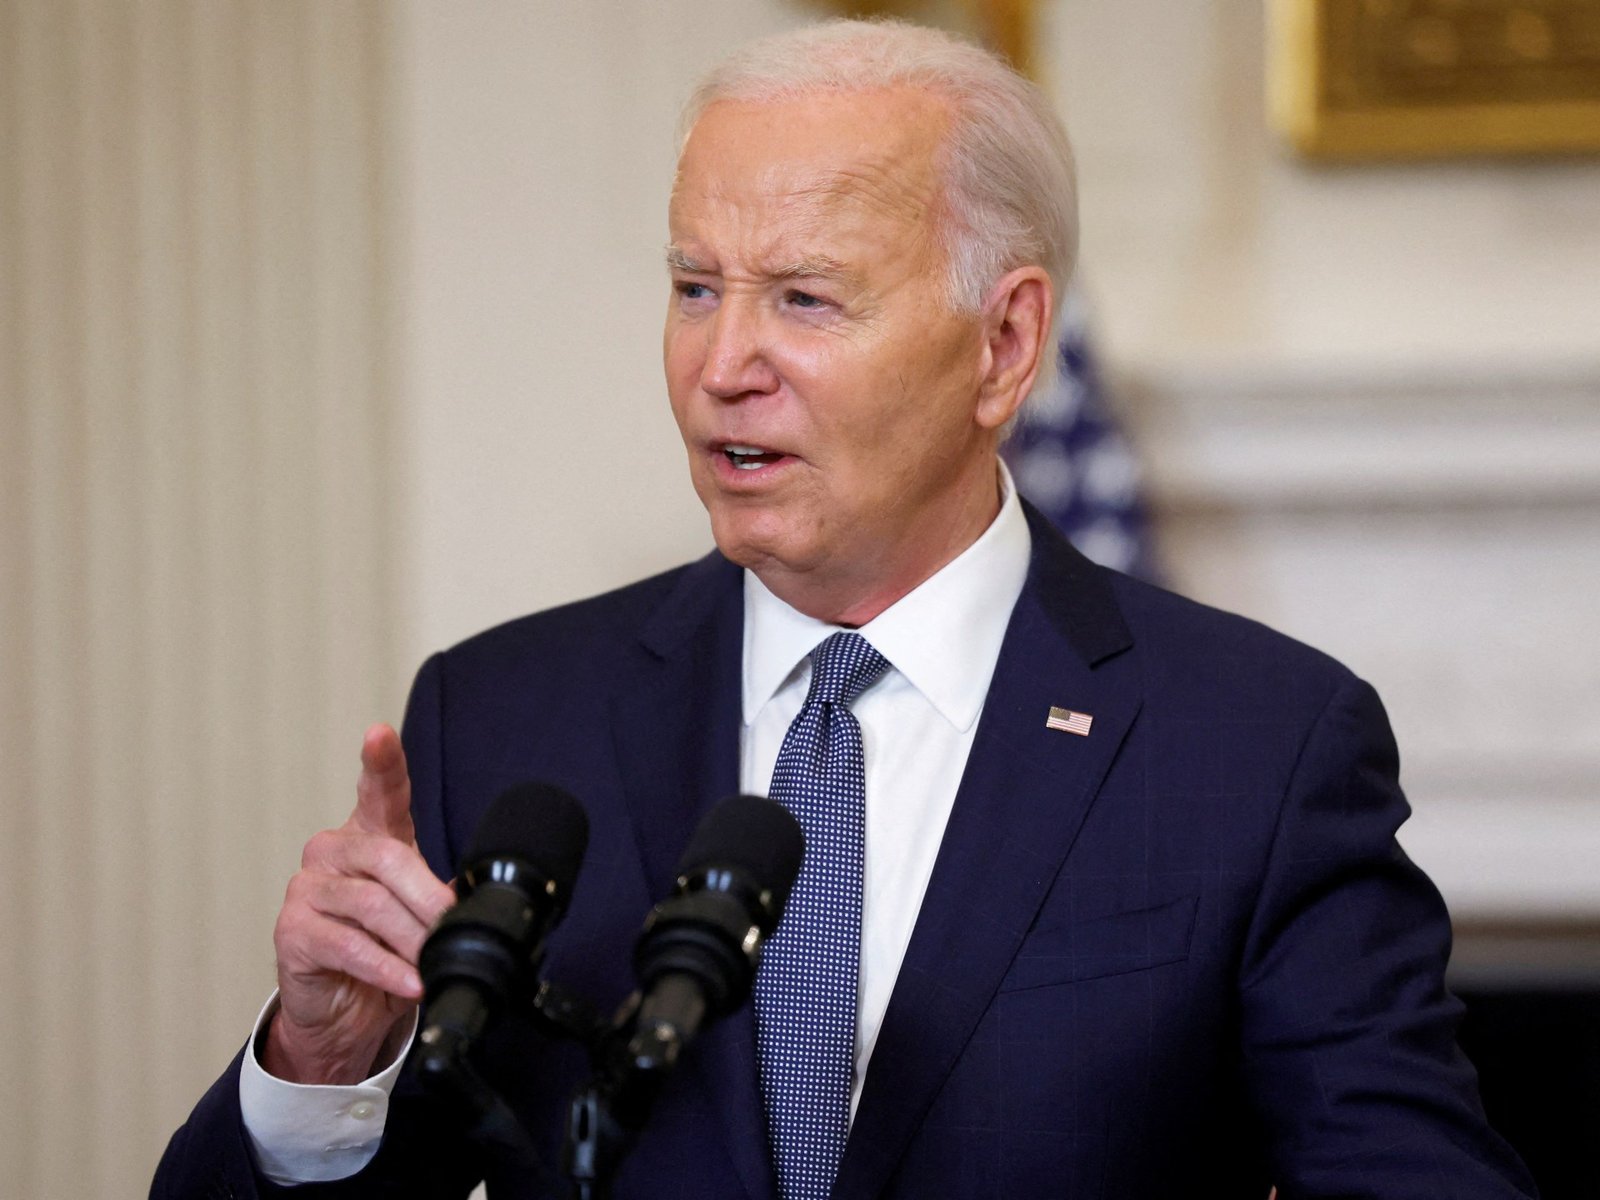 Biden says Israel has agreed to ‘enduring’ Gaza ceasefire proposal | Joe Biden News